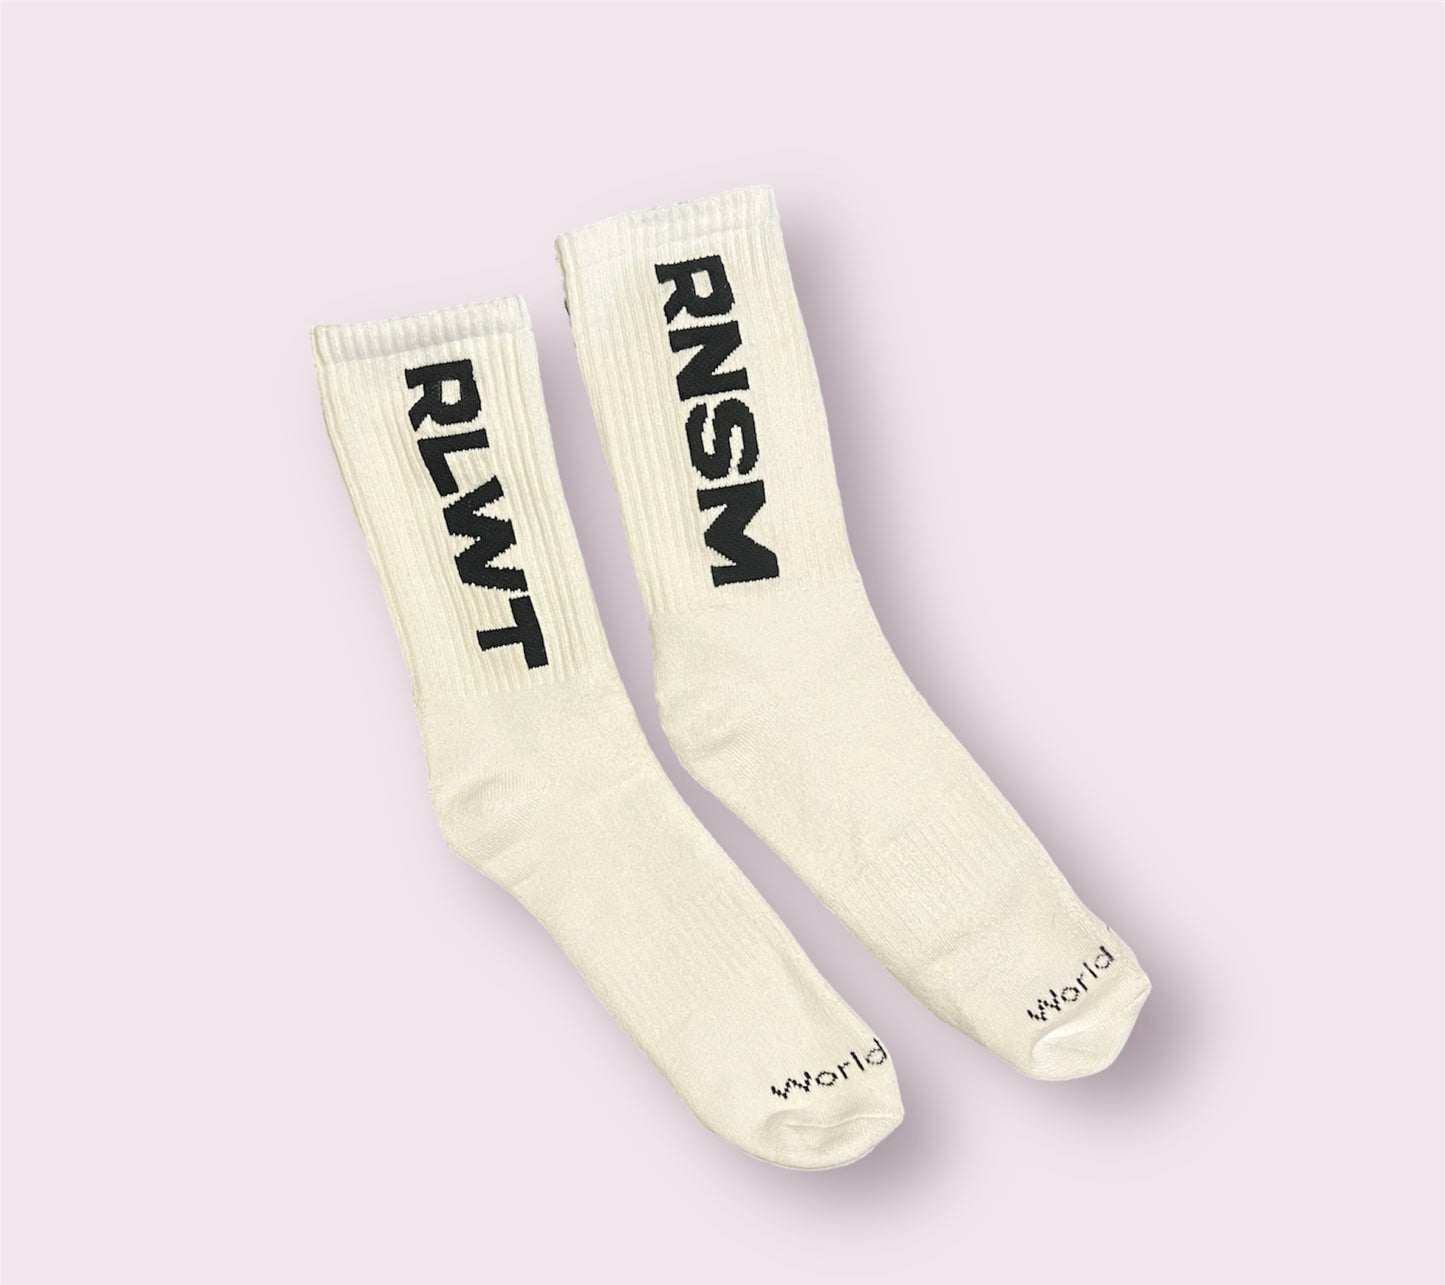 RLWT socks